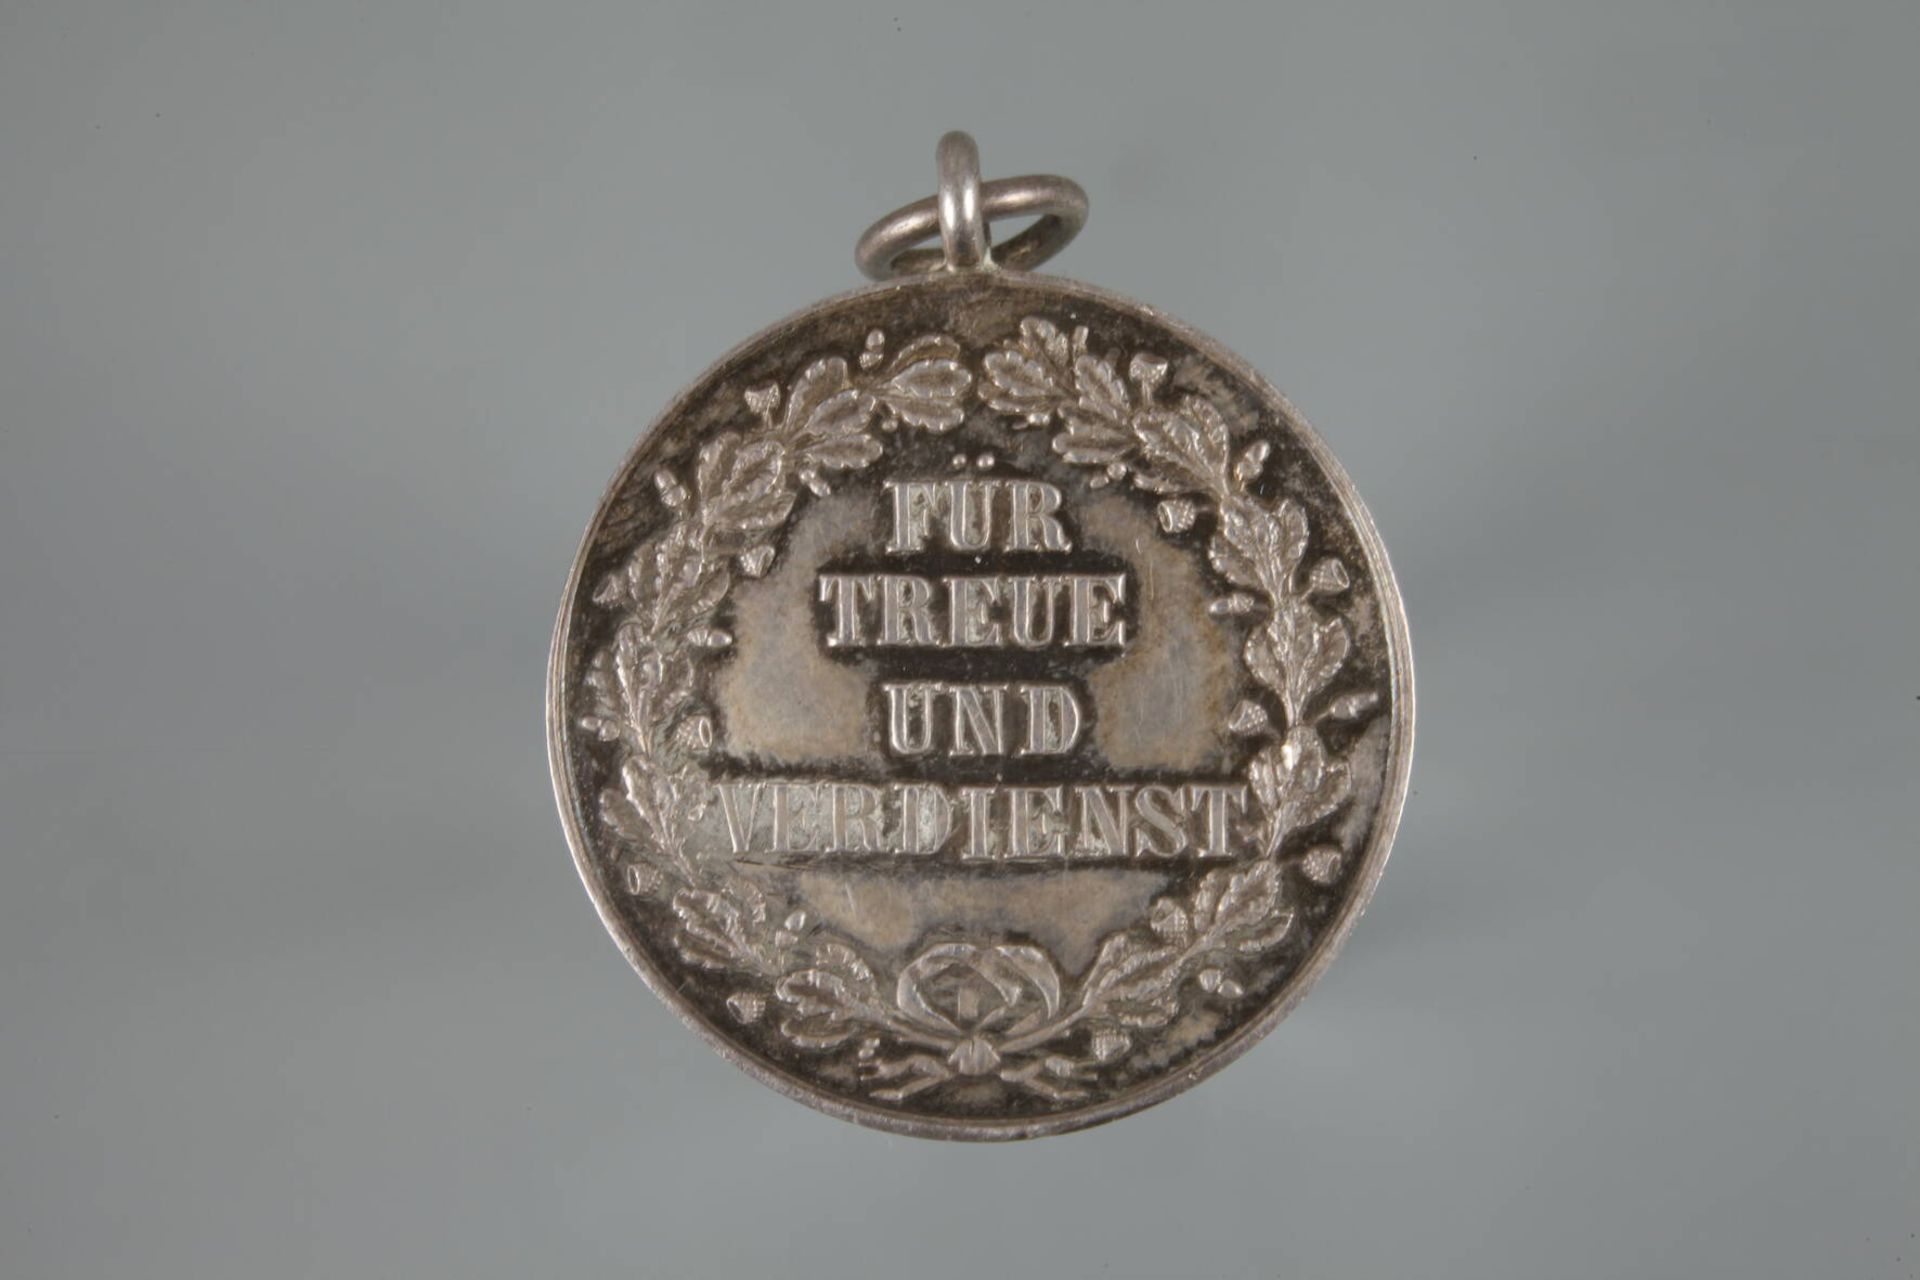 Silberne Ehrenmedaille Reußfür Treue und Verdienst, 1867-1918, geringe Tragespuren, G ca. 8,9 g. - Bild 3 aus 3